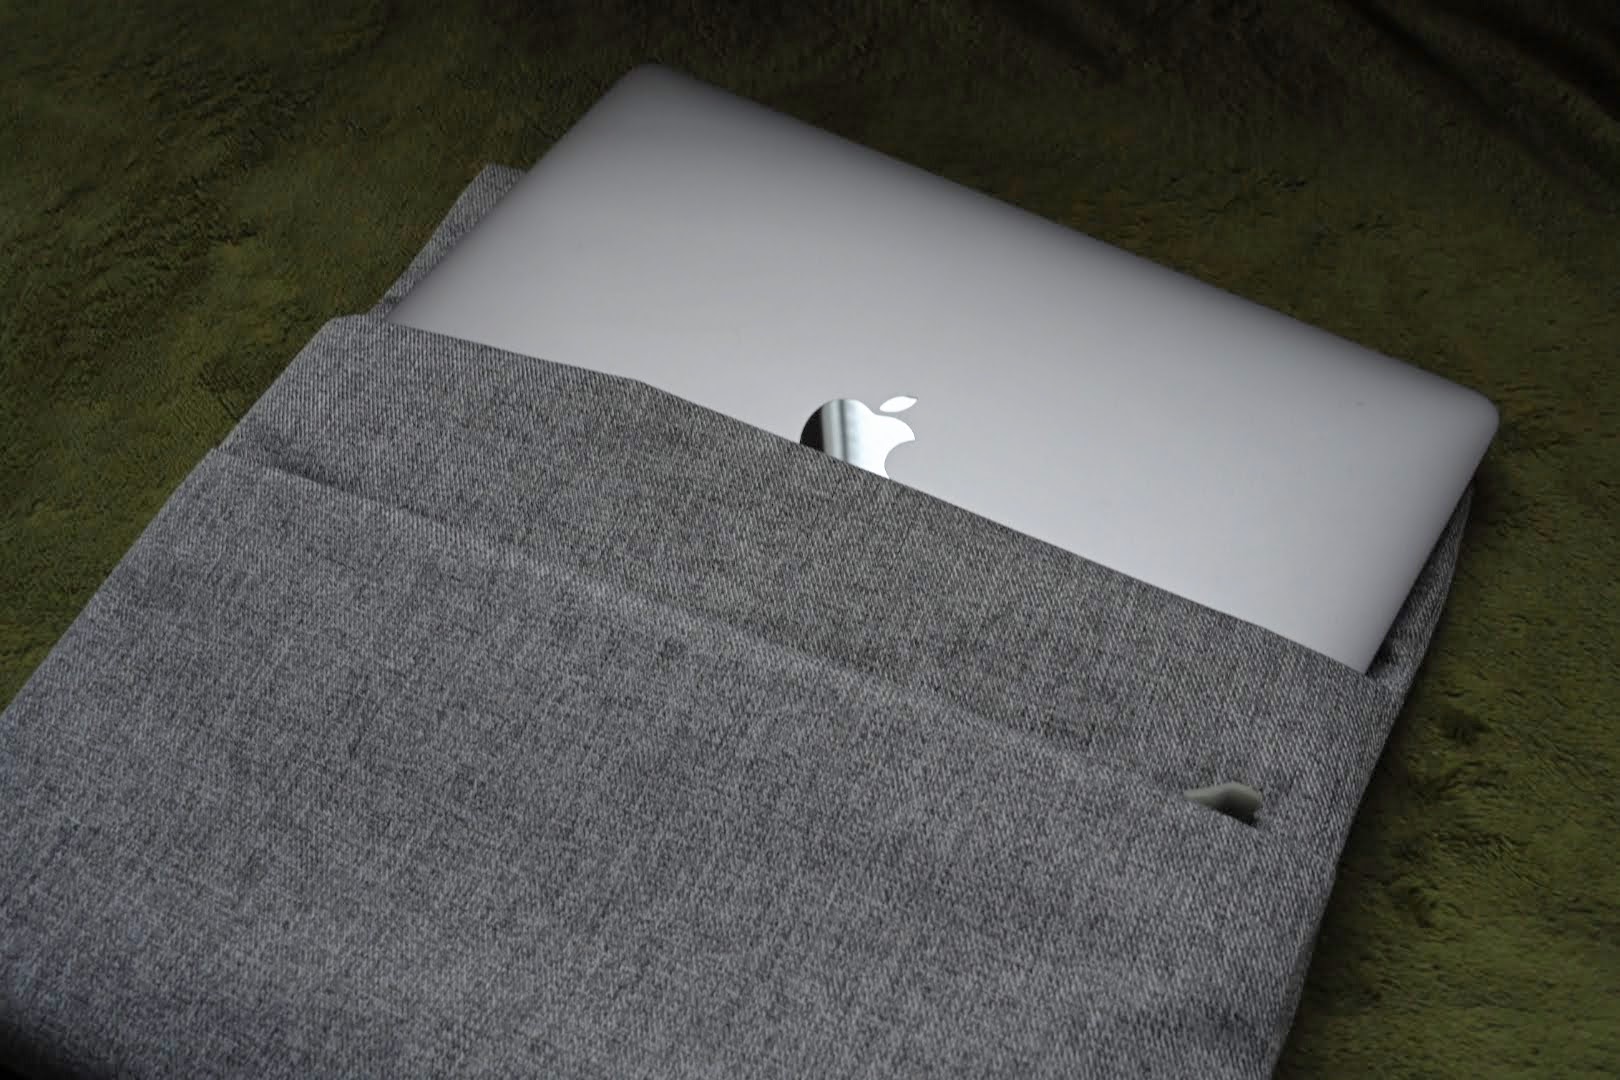 MacBookProがピッタリサイズ